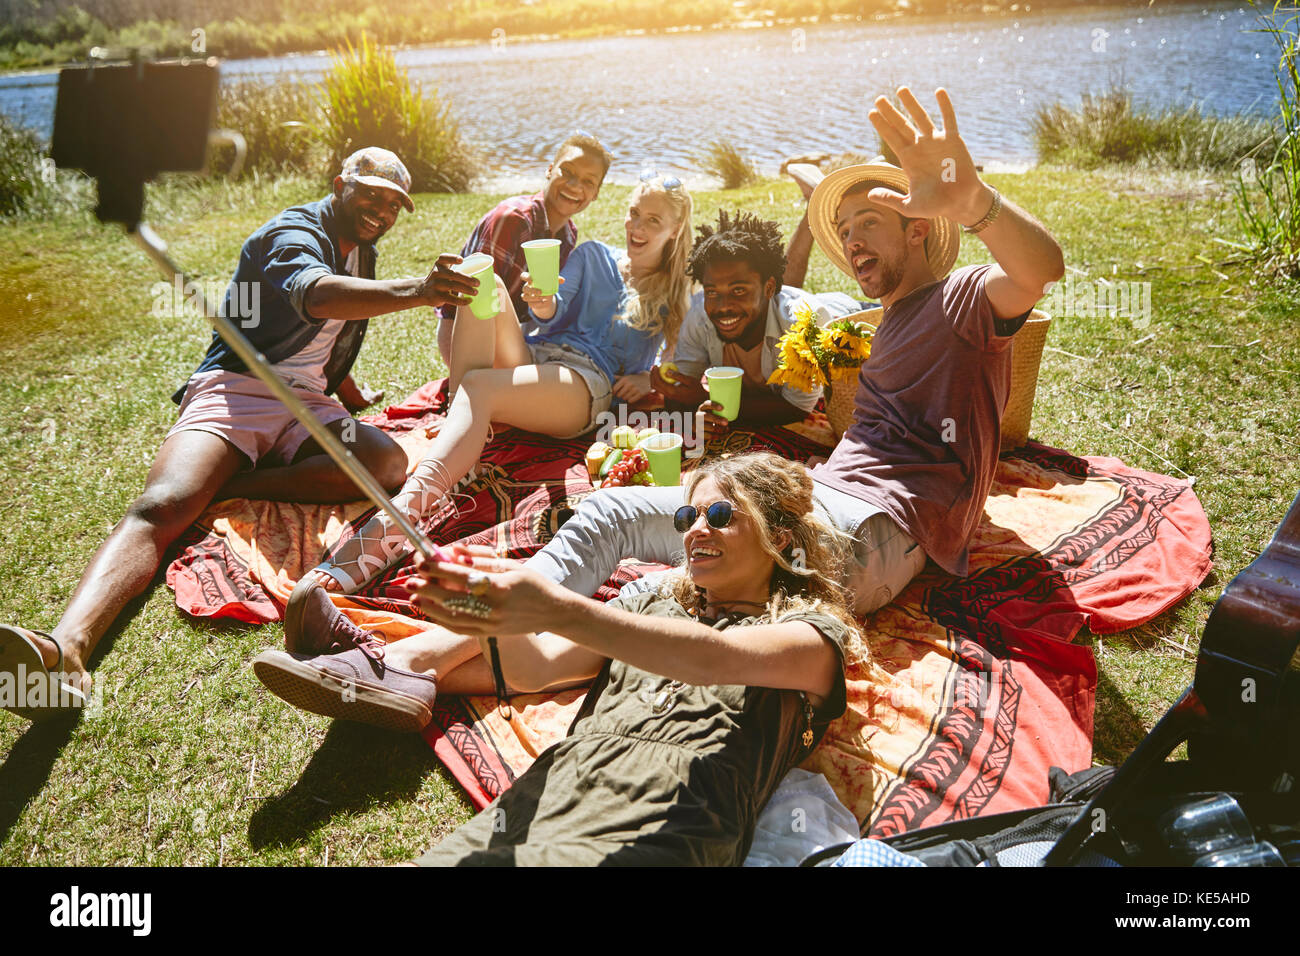 De jeunes amis joueurs prennent le selfie avec un bâton de selfie, en appréciant un pique-nique au bord de la rivière ensoleillée en été Banque D'Images